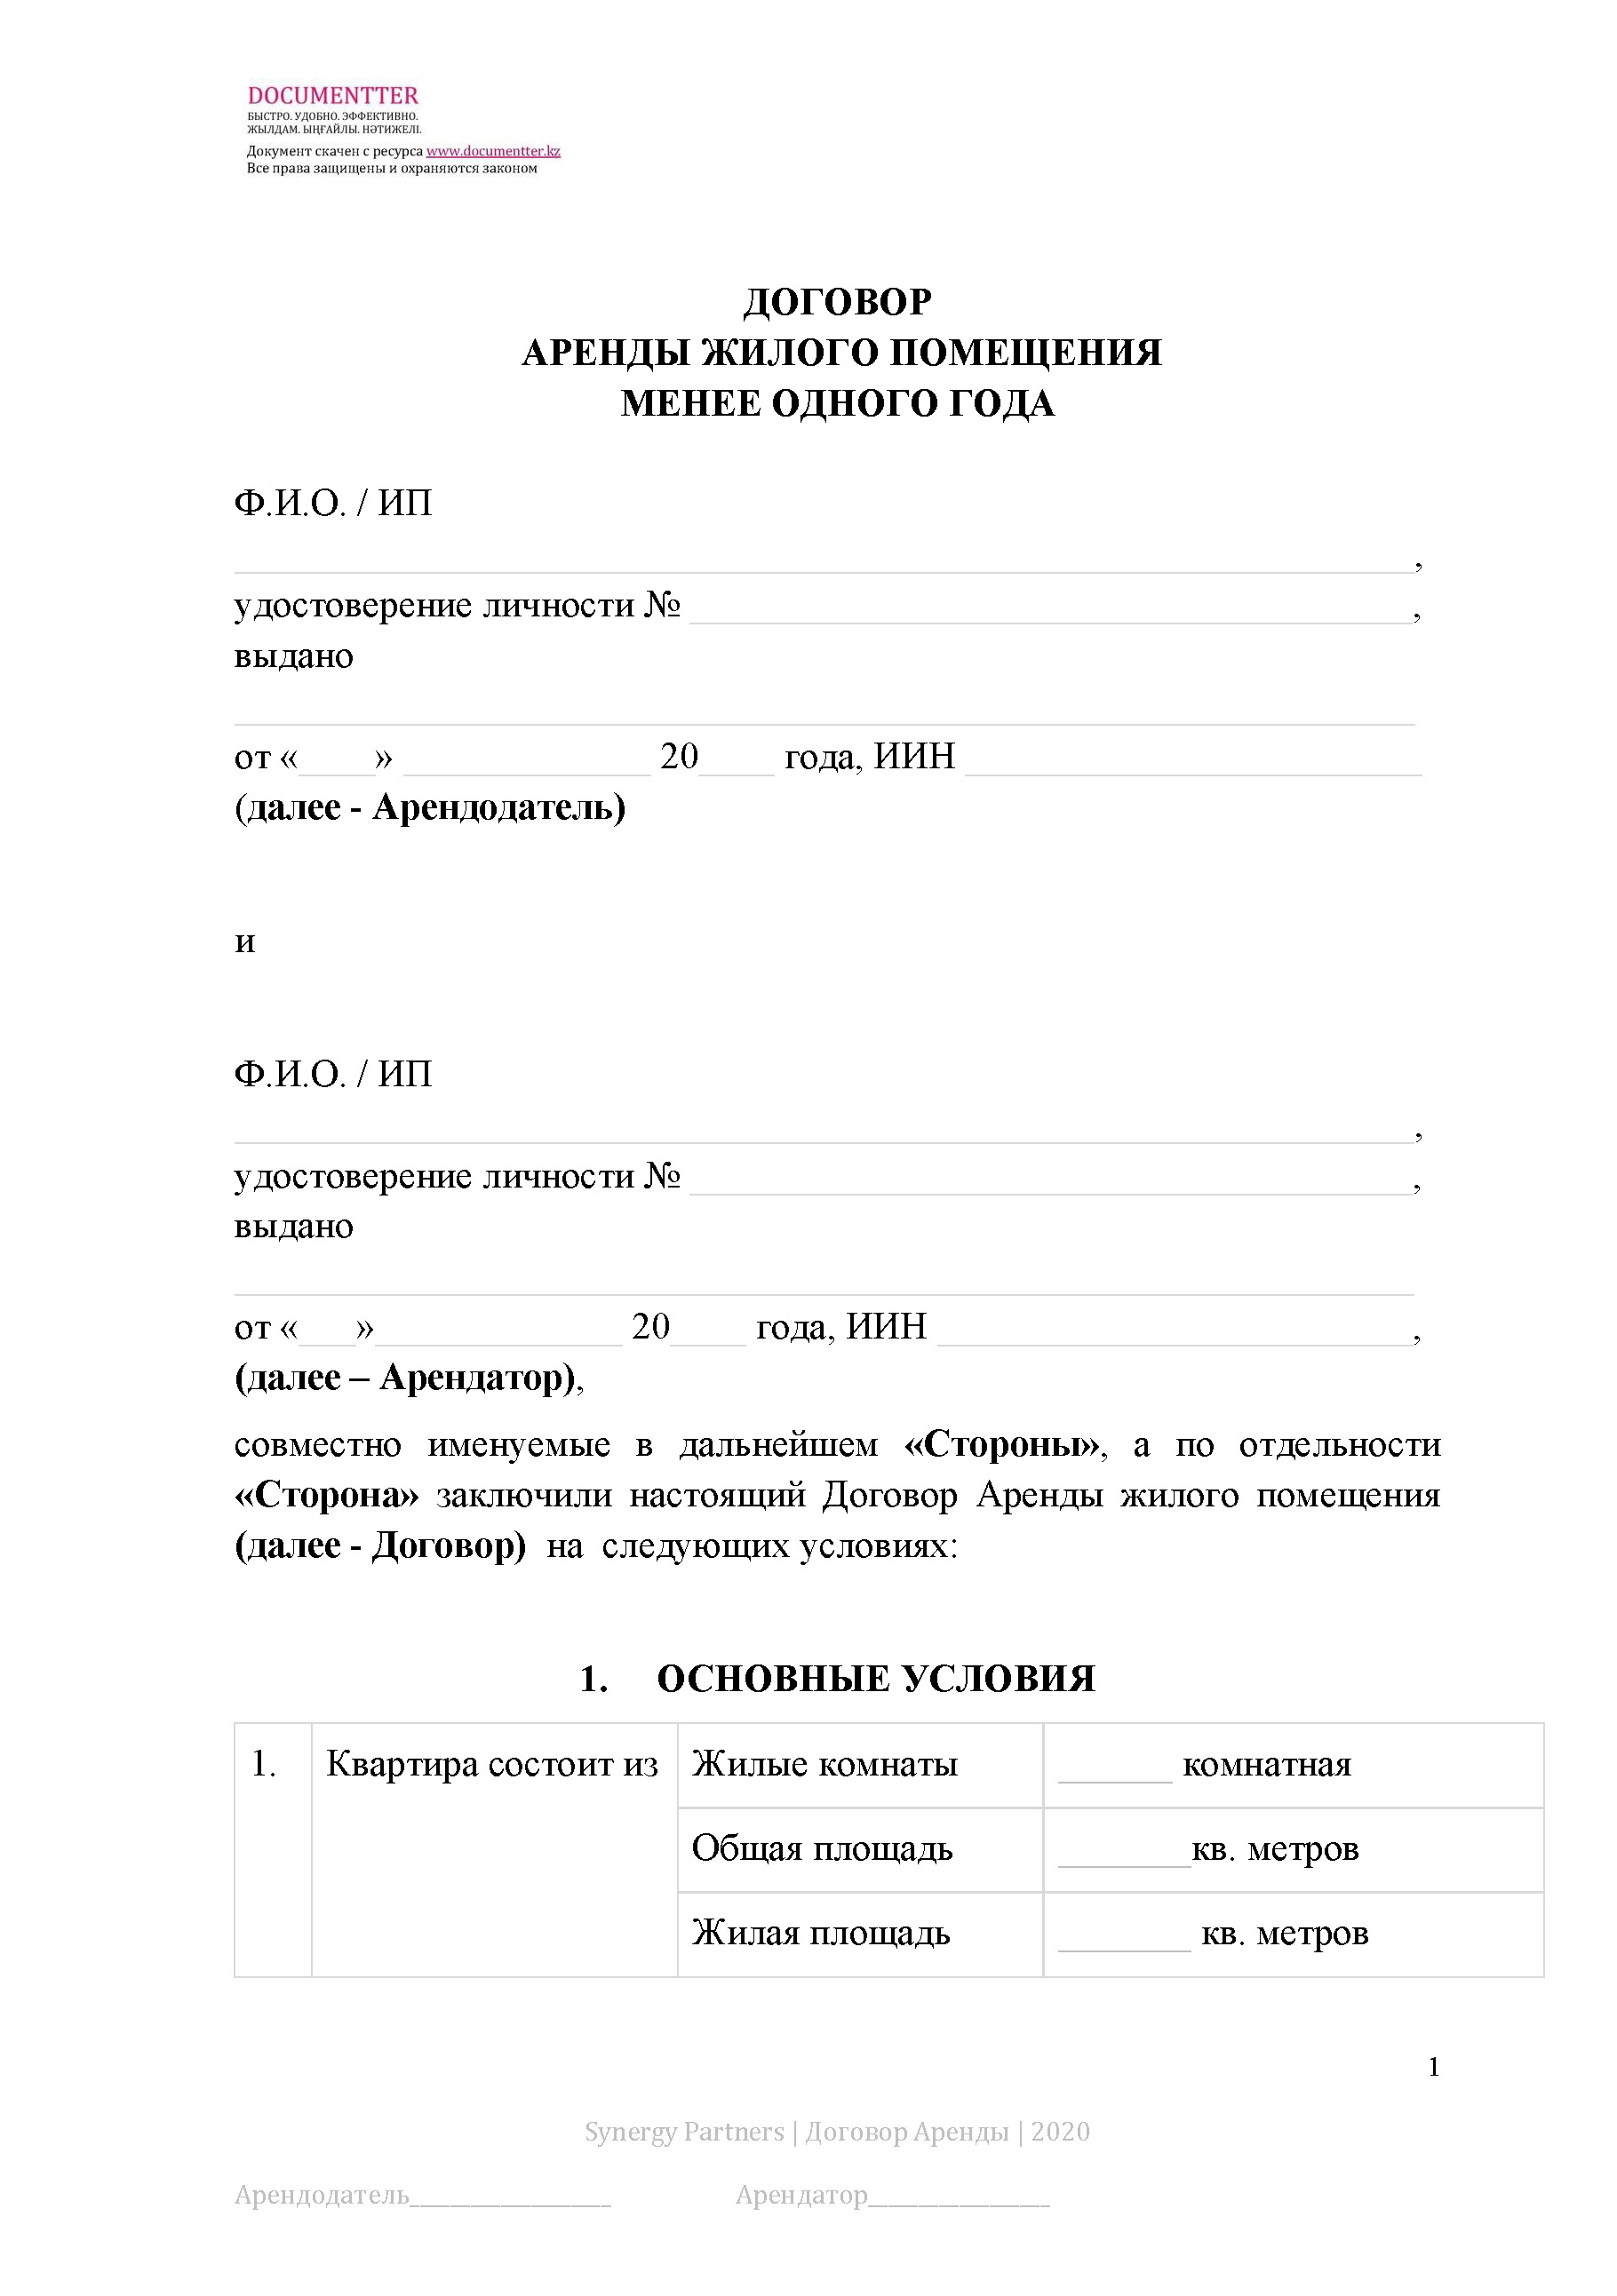 Договор аренды жилого помещения (квартиры) 14 | documentter.kz в Казахстане 